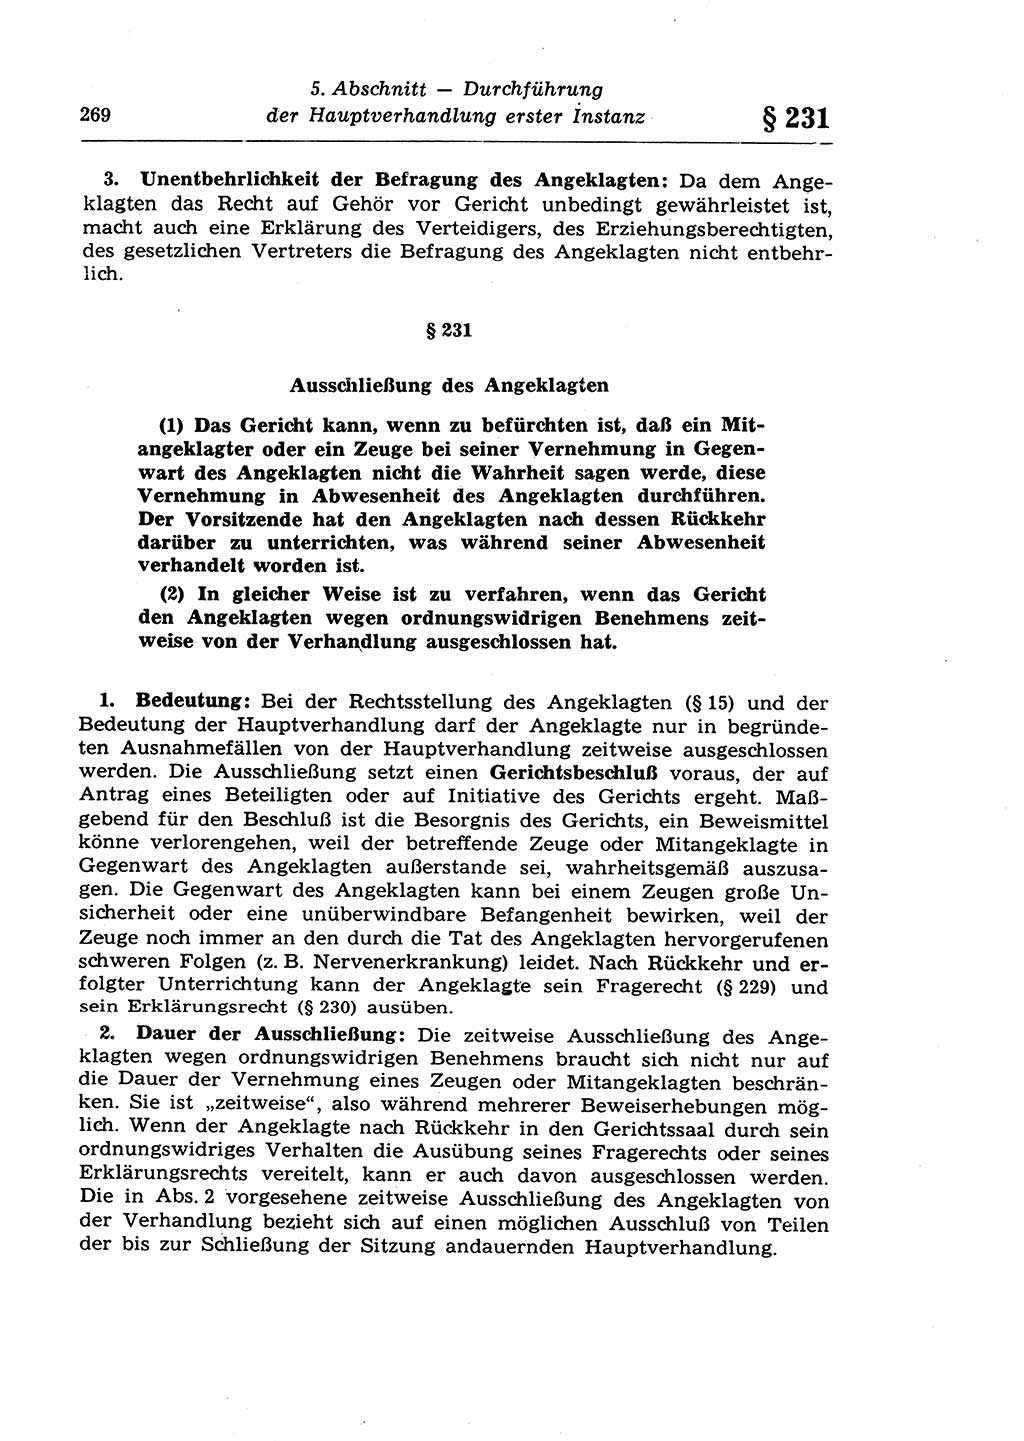 Strafprozeßrecht der DDR (Deutsche Demokratische Republik), Lehrkommentar zur Strafprozeßordnung (StPO) 1968, Seite 269 (Strafprozeßr. DDR Lehrkomm. StPO 19688, S. 269)